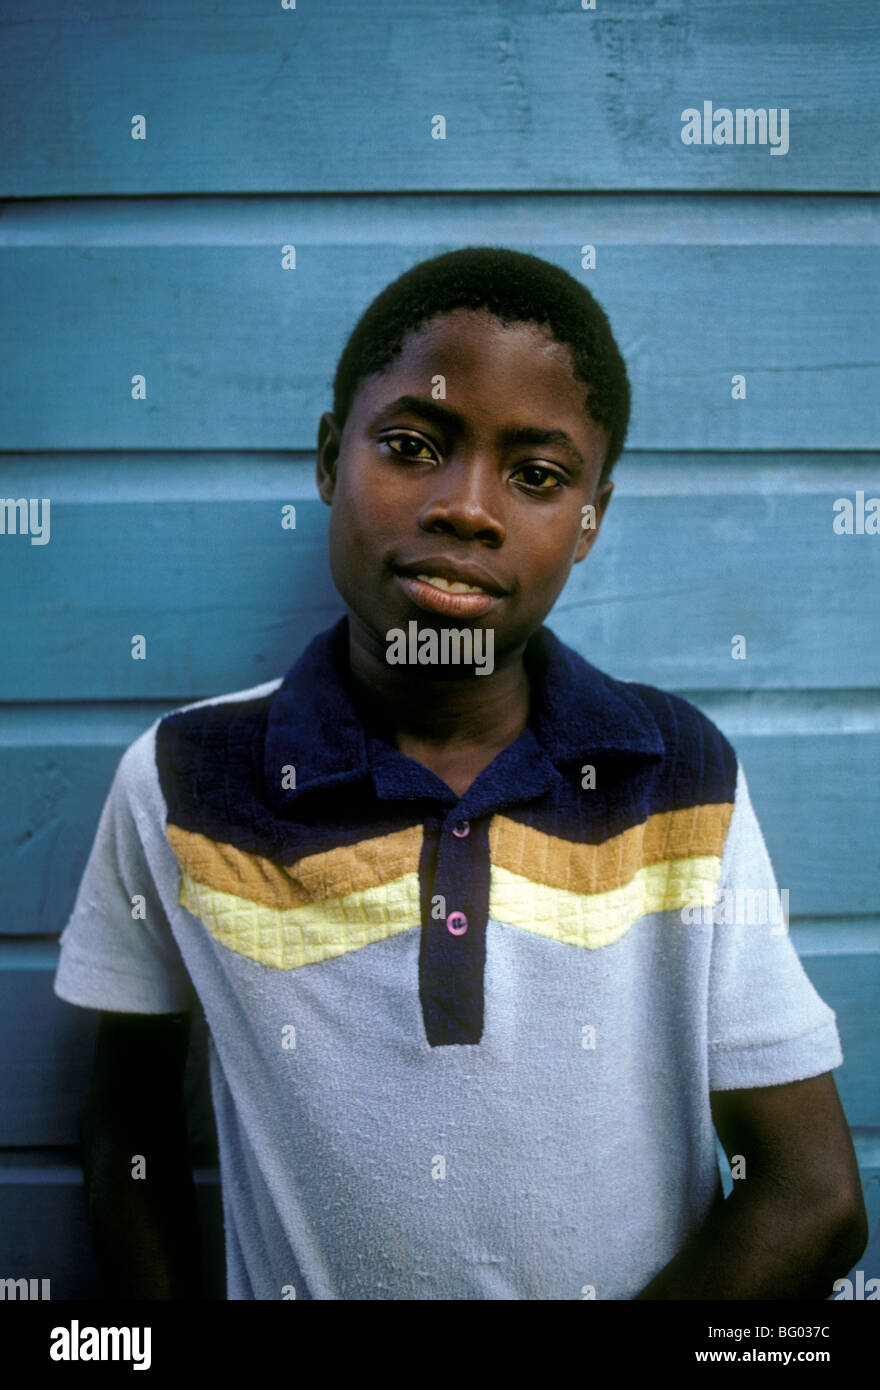 1, un garçon, jamaïcain, jeune garçon, contact oculaire, vue de face, portrait, Montego Bay, Jamaïque Banque D'Images